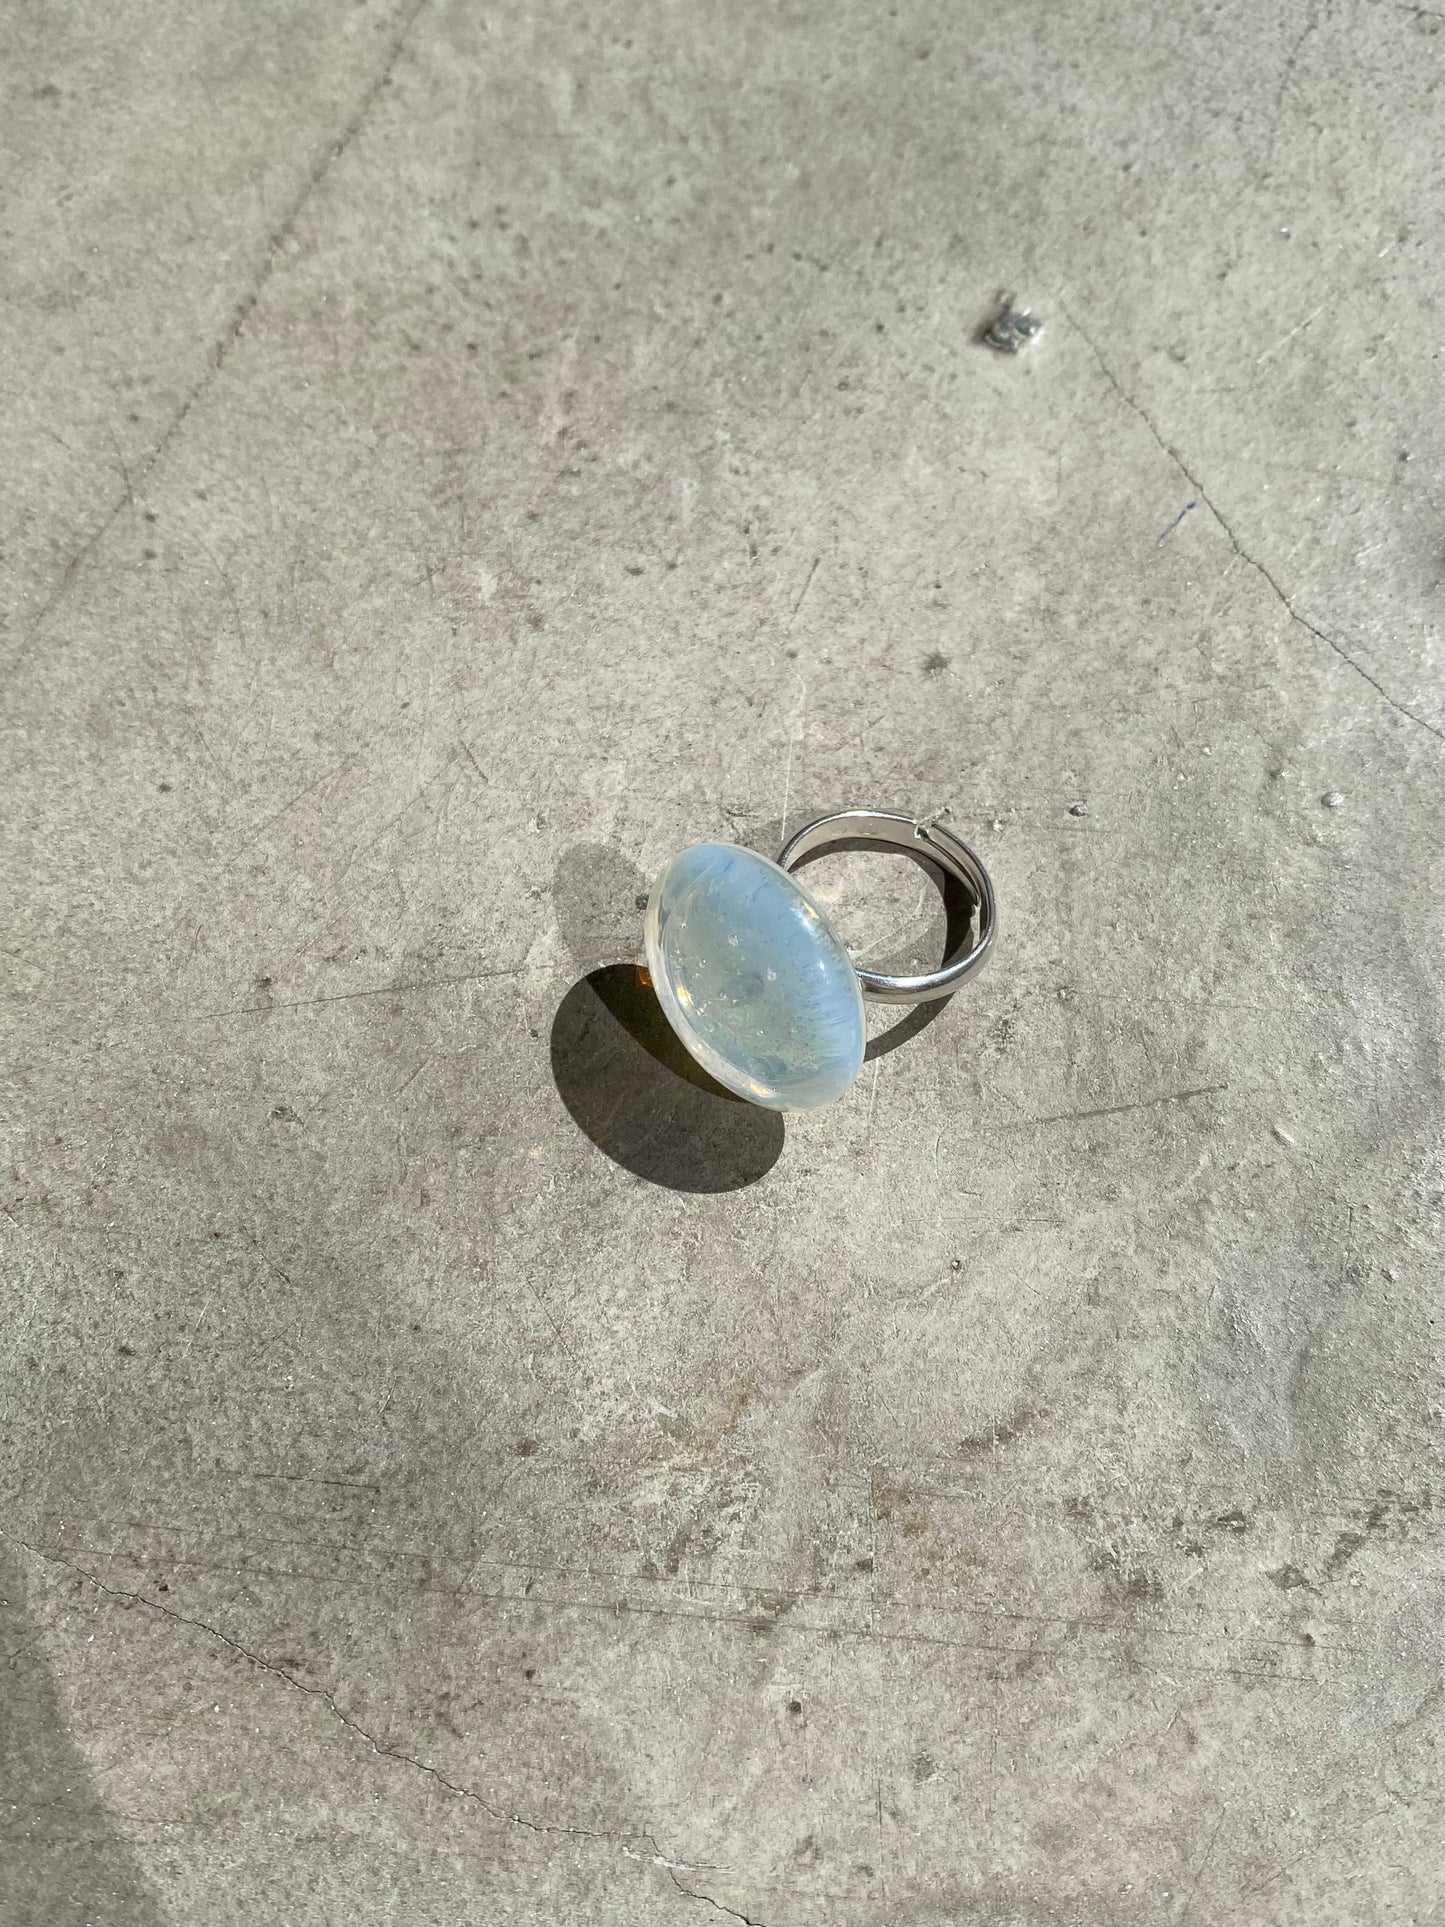 Molten glass ring - Opaline